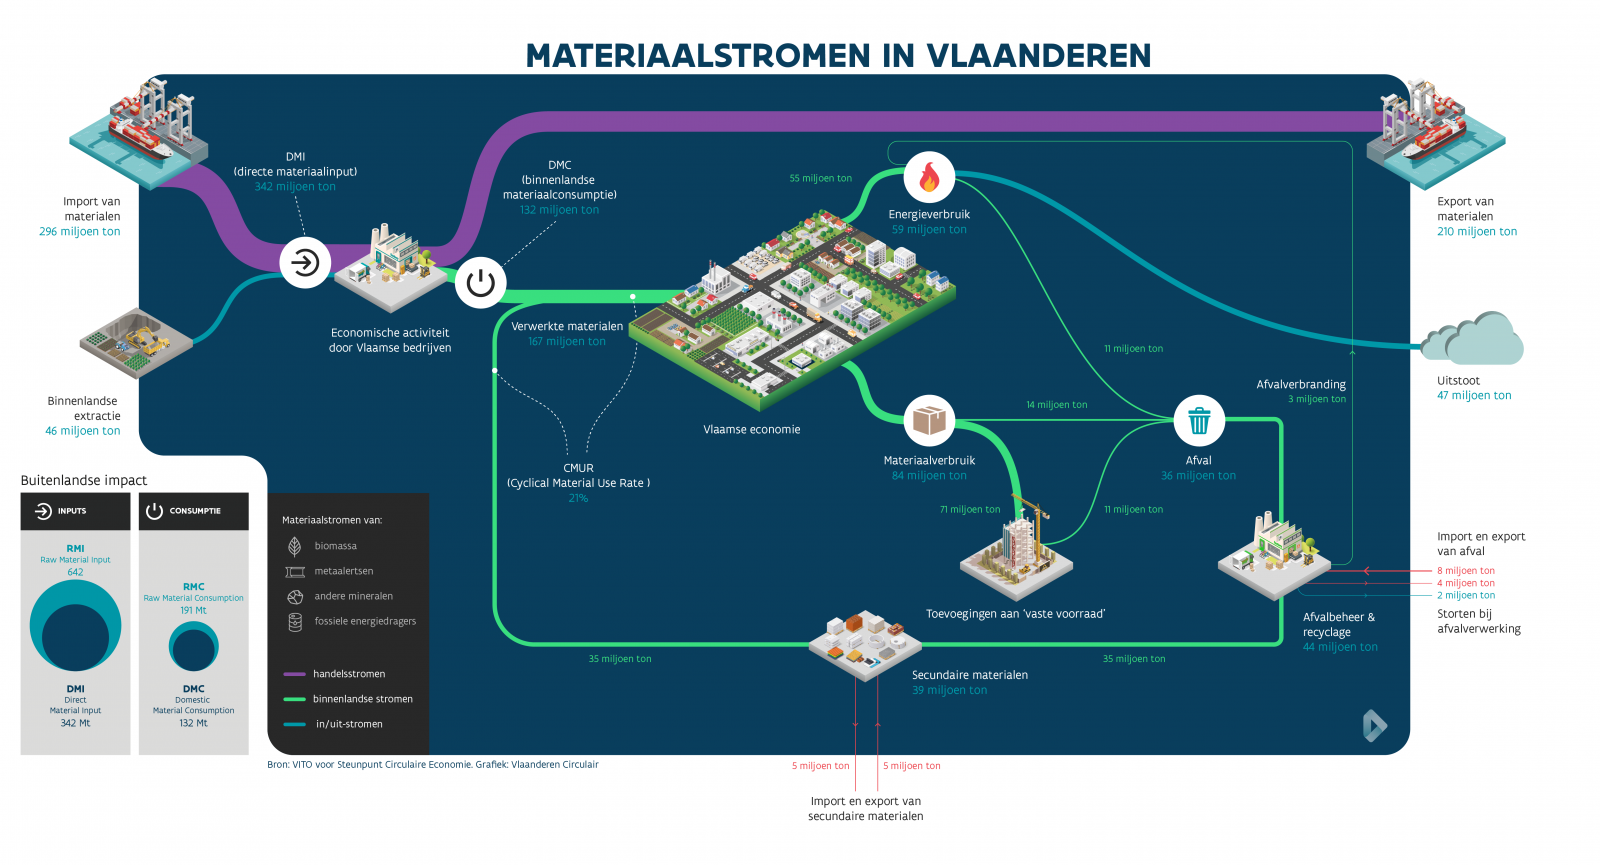 Materiaalstromen in Vlaanderen